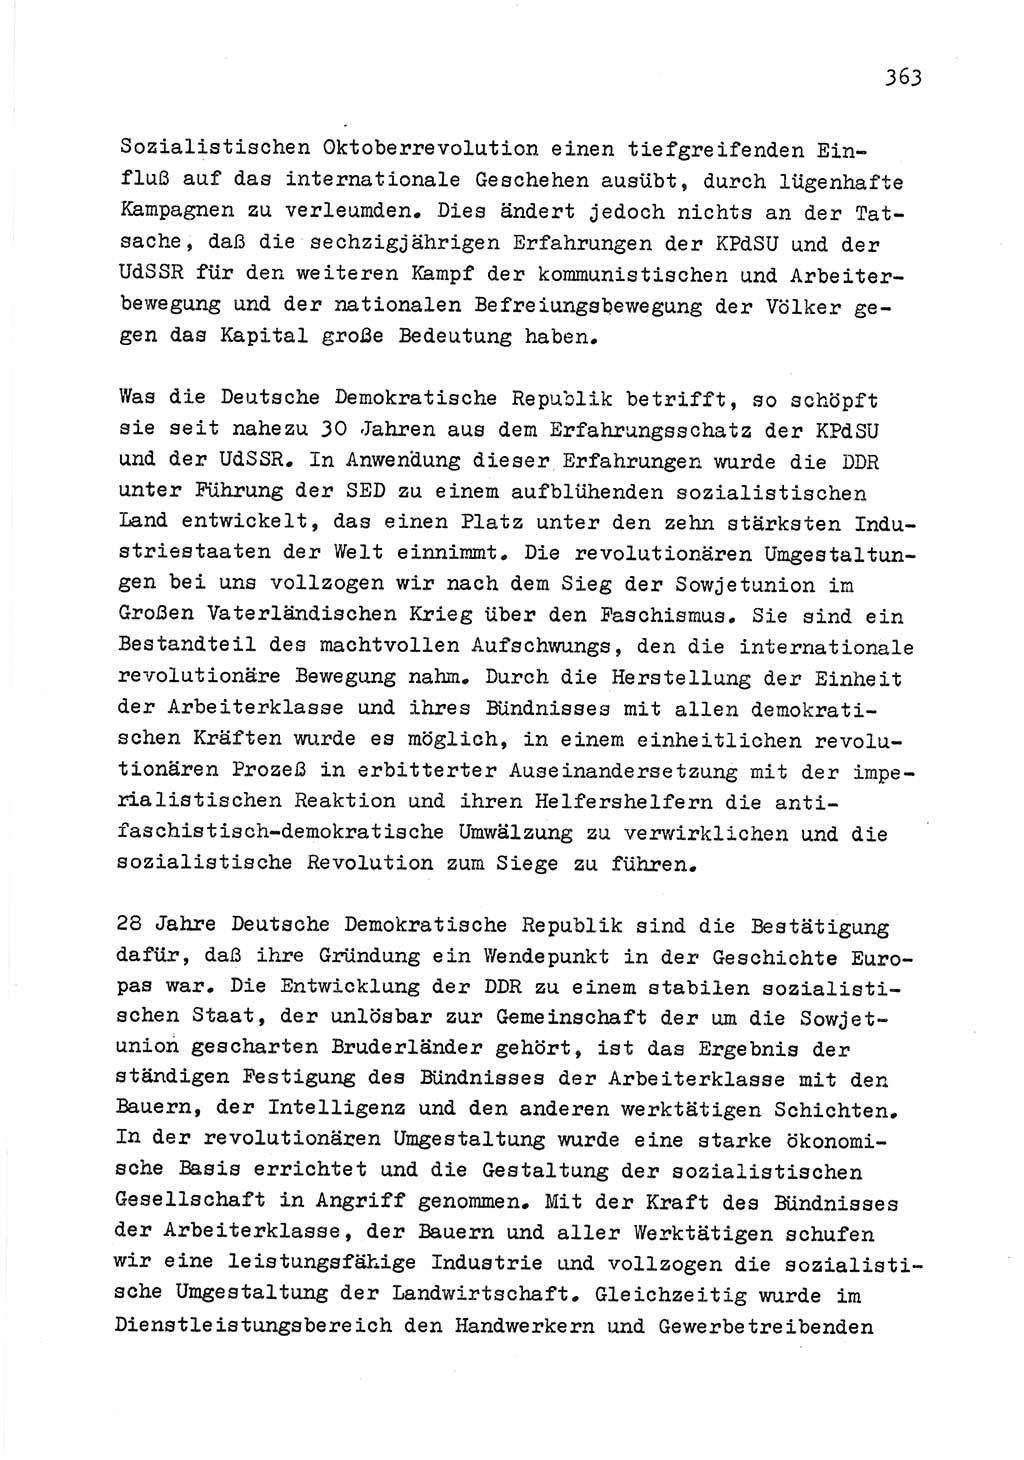 Zu Fragen der Parteiarbeit [Sozialistische Einheitspartei Deutschlands (SED) Deutsche Demokratische Republik (DDR)] 1979, Seite 363 (Fr. PA SED DDR 1979, S. 363)